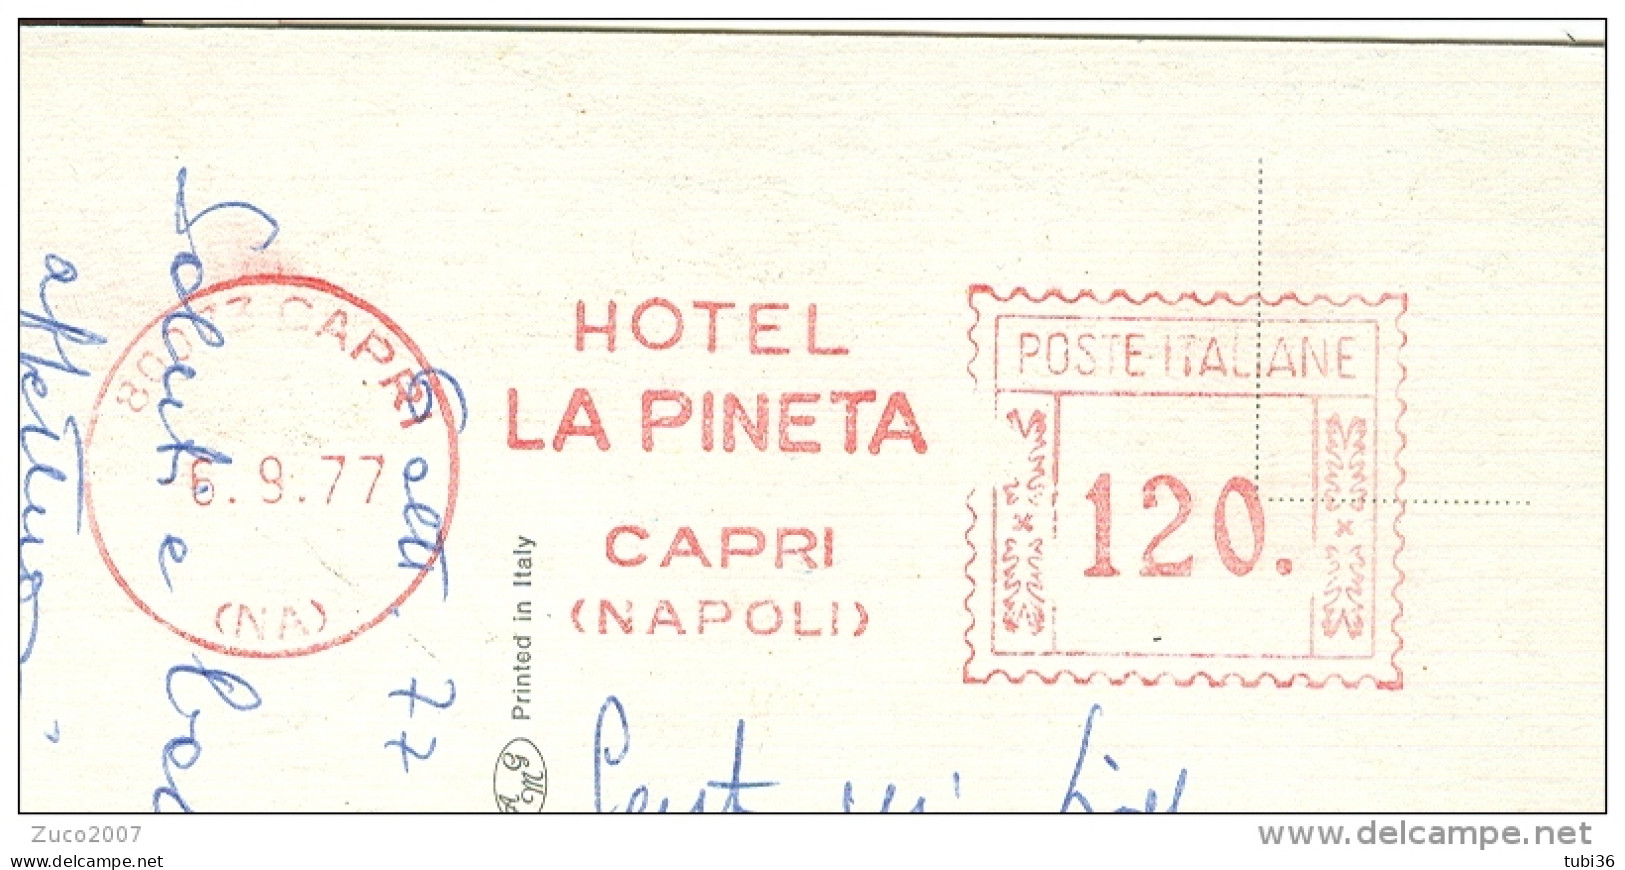 HOTEL LA PINETA, CAPRI, NAPOLI, AFFRANCATURA MECCANICA ROSSA £.120, 1977, CARTOLINA PER RAVENNA, - Settore Alberghiero & Ristorazione